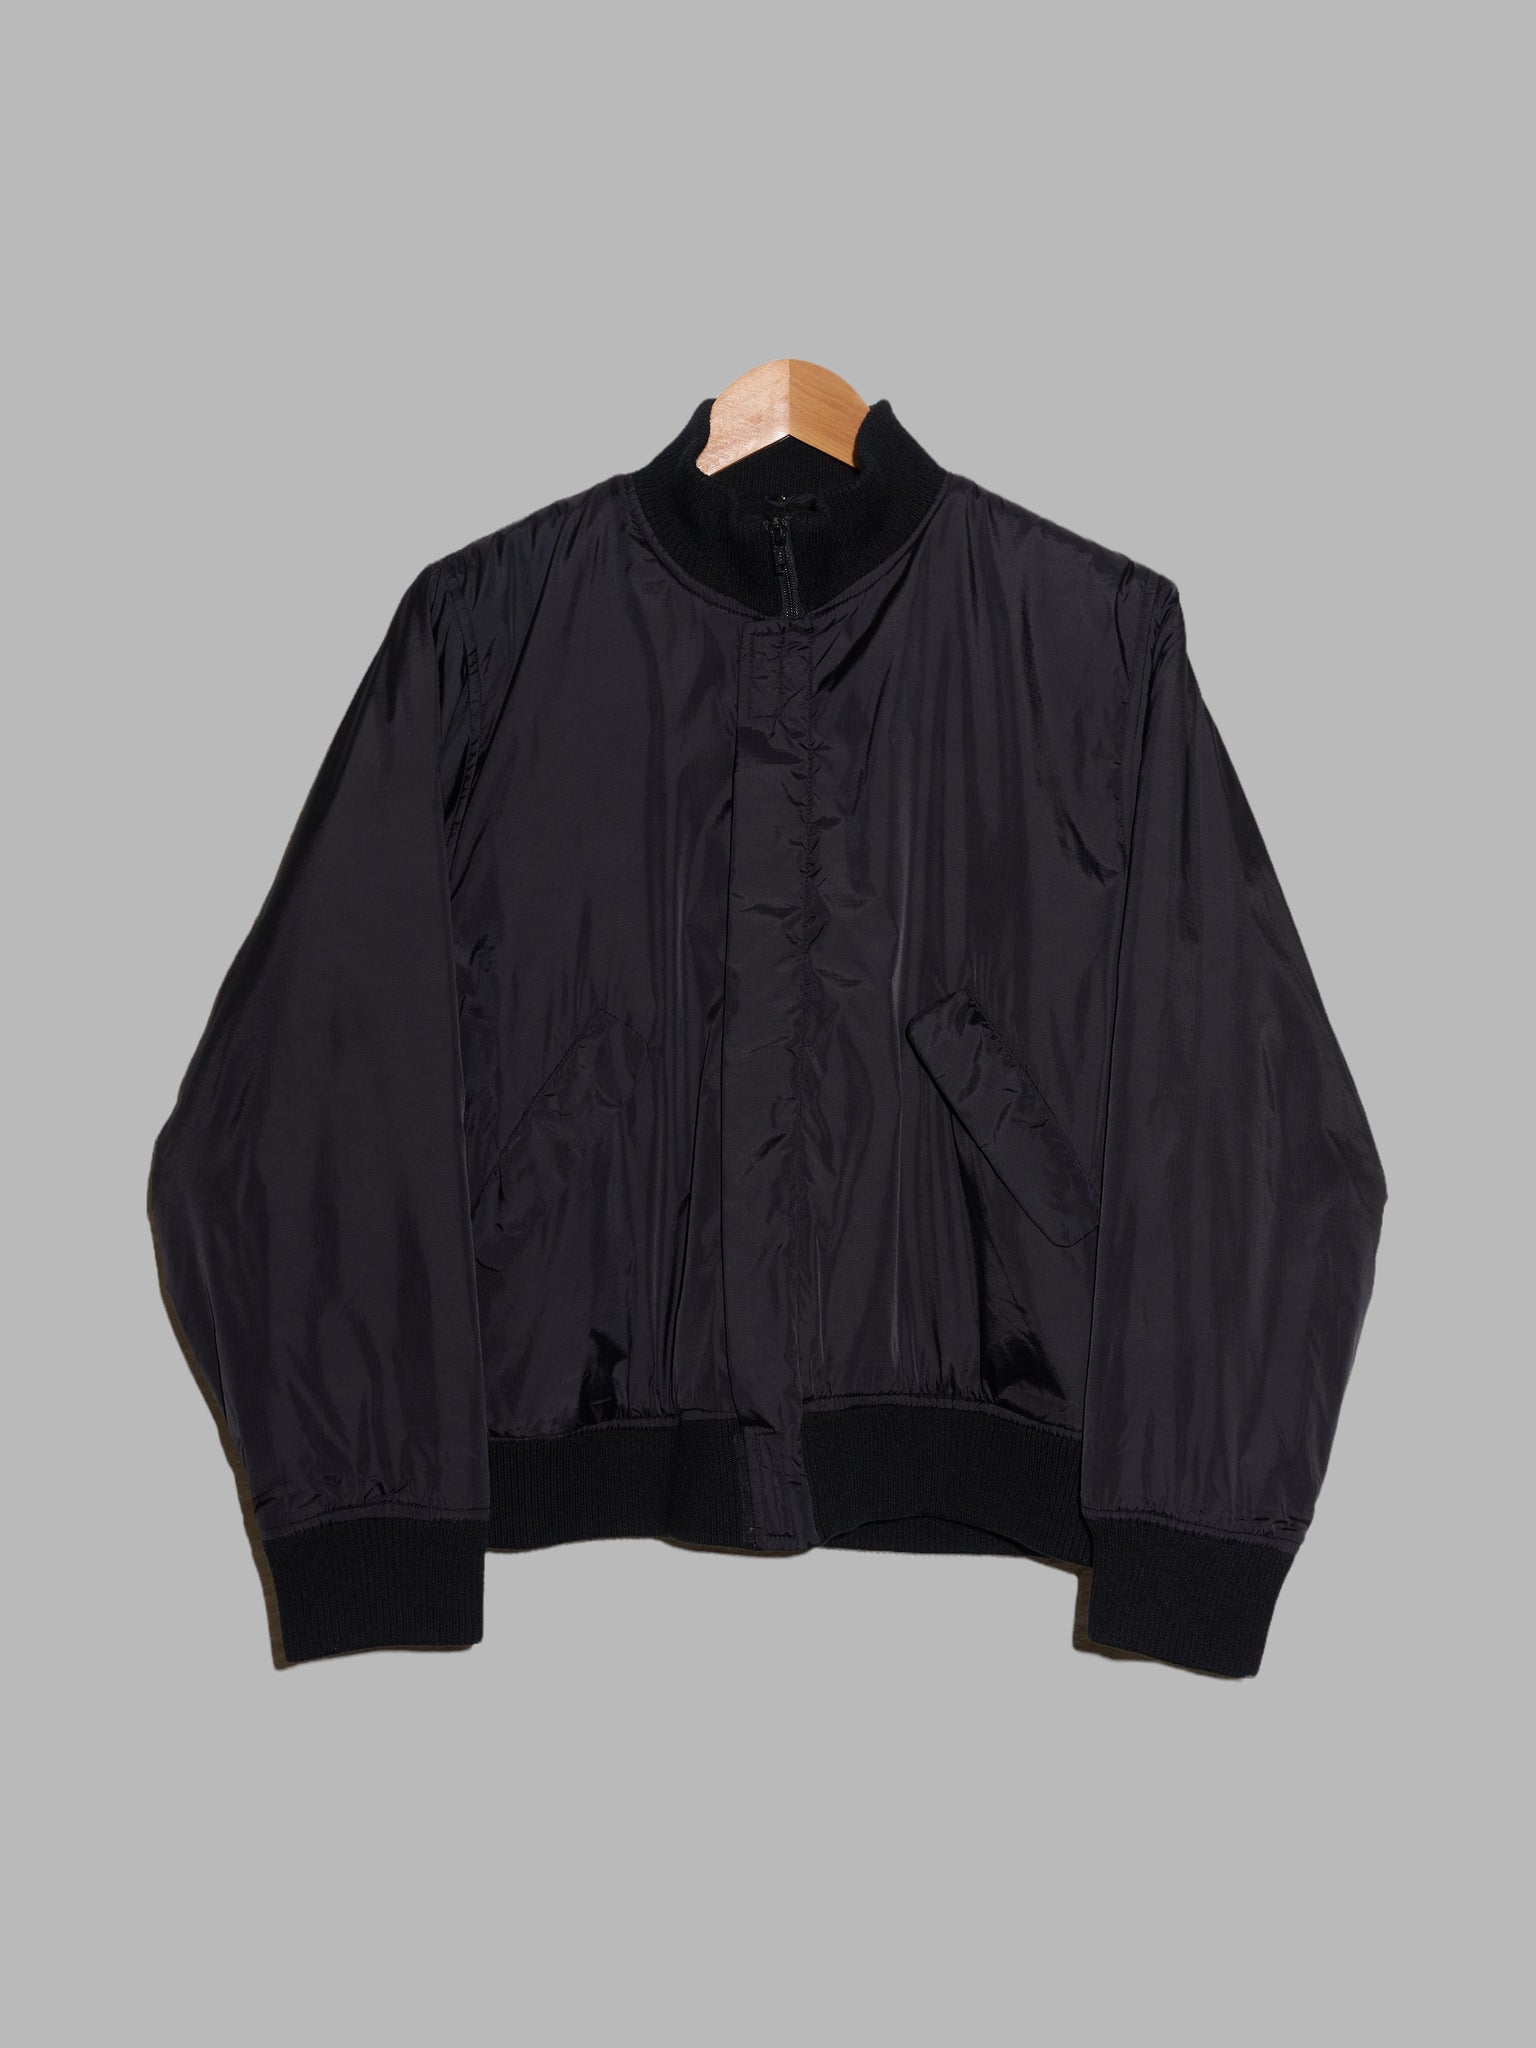 Yohji Yamamoto Y’s for living black nylon fleece lined bomber jacket